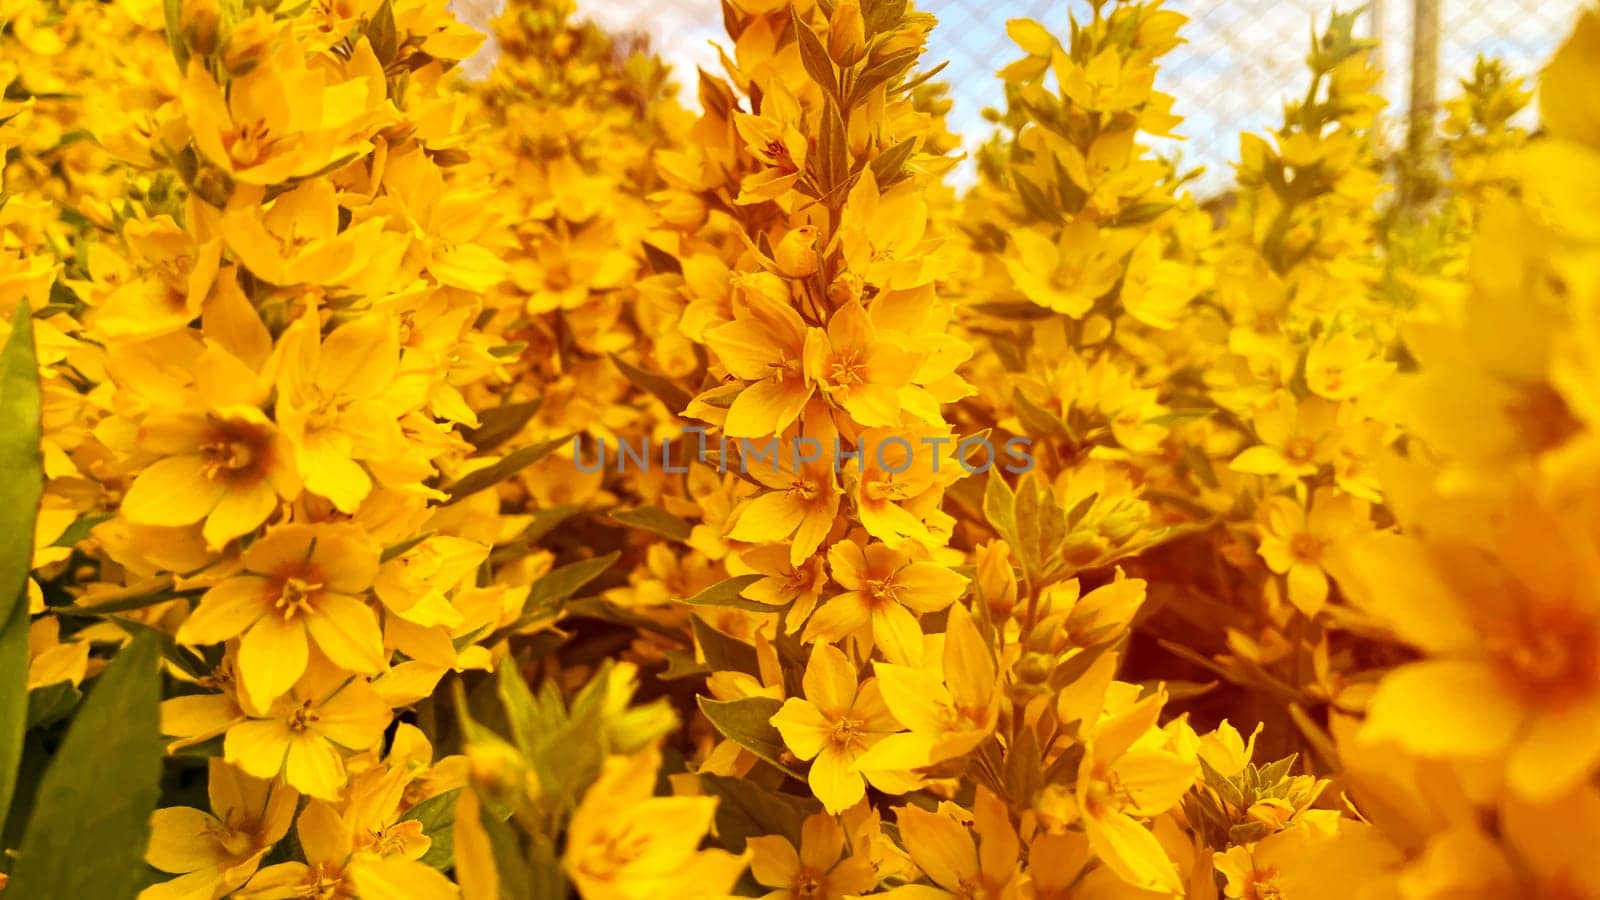 Wild yellow flowers in sunlight by KCreeper